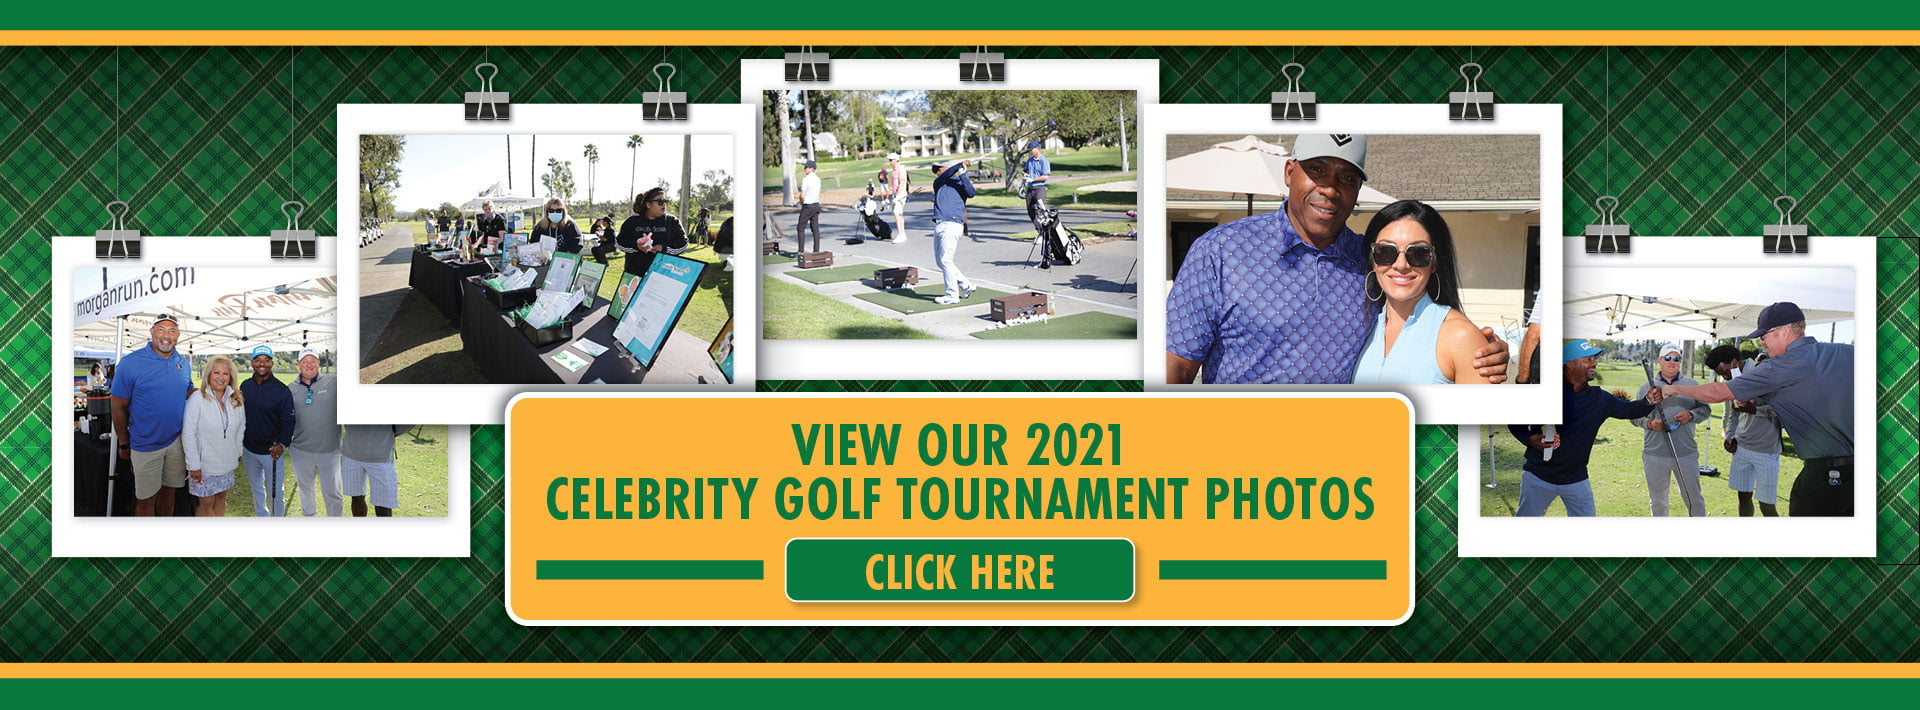 View Our 2021 Celebrity Golf Tournament Photos